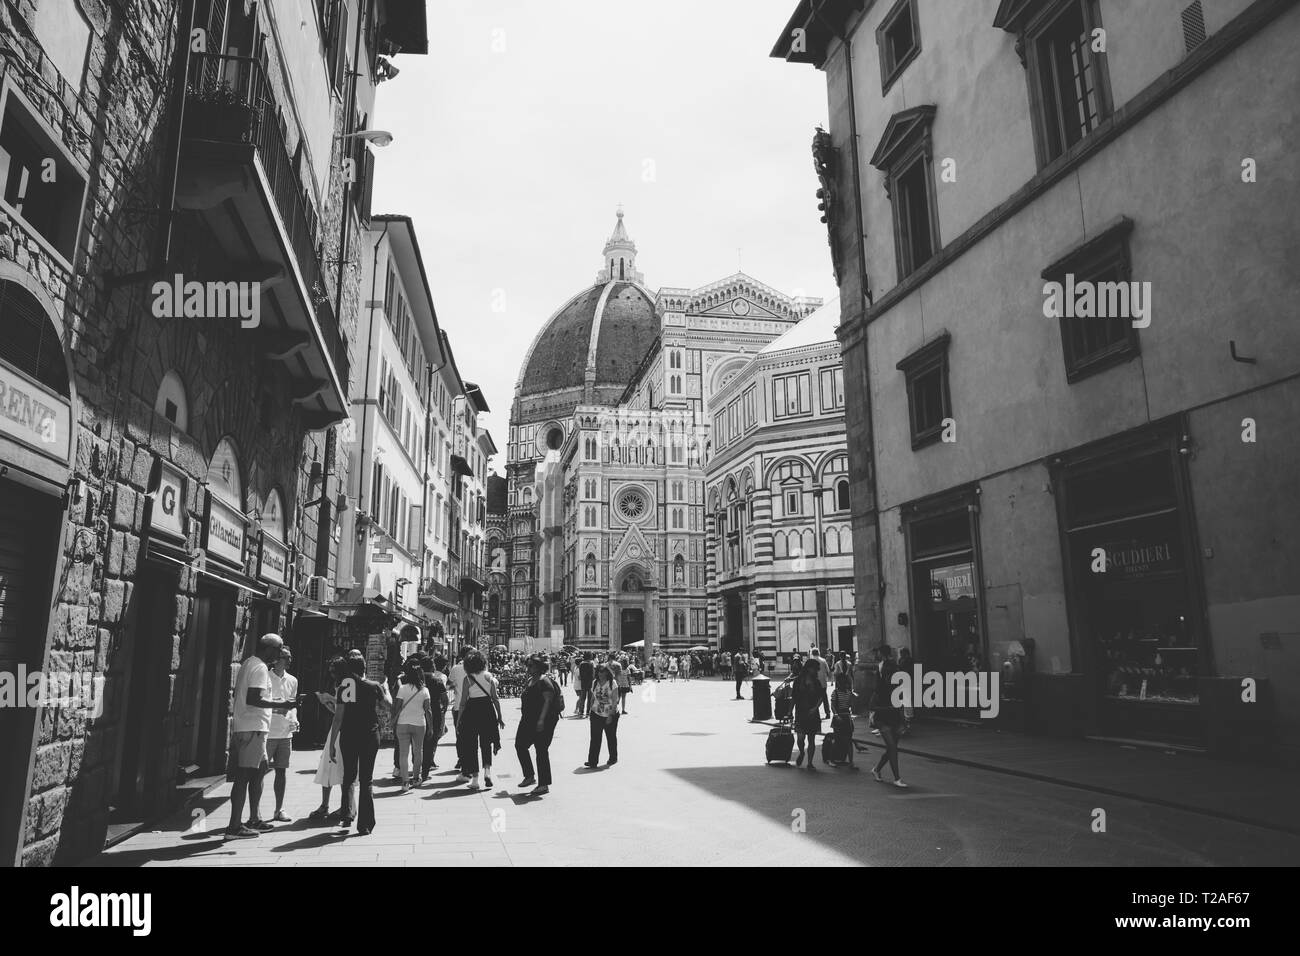 Florenz, Italien, 24. Juni 2018: Panoramablick auf der Piazza del Duomo und der Kathedrale Santa Maria del Fiore (Kathedrale der Heiligen Maria der Blume). P Stockfoto